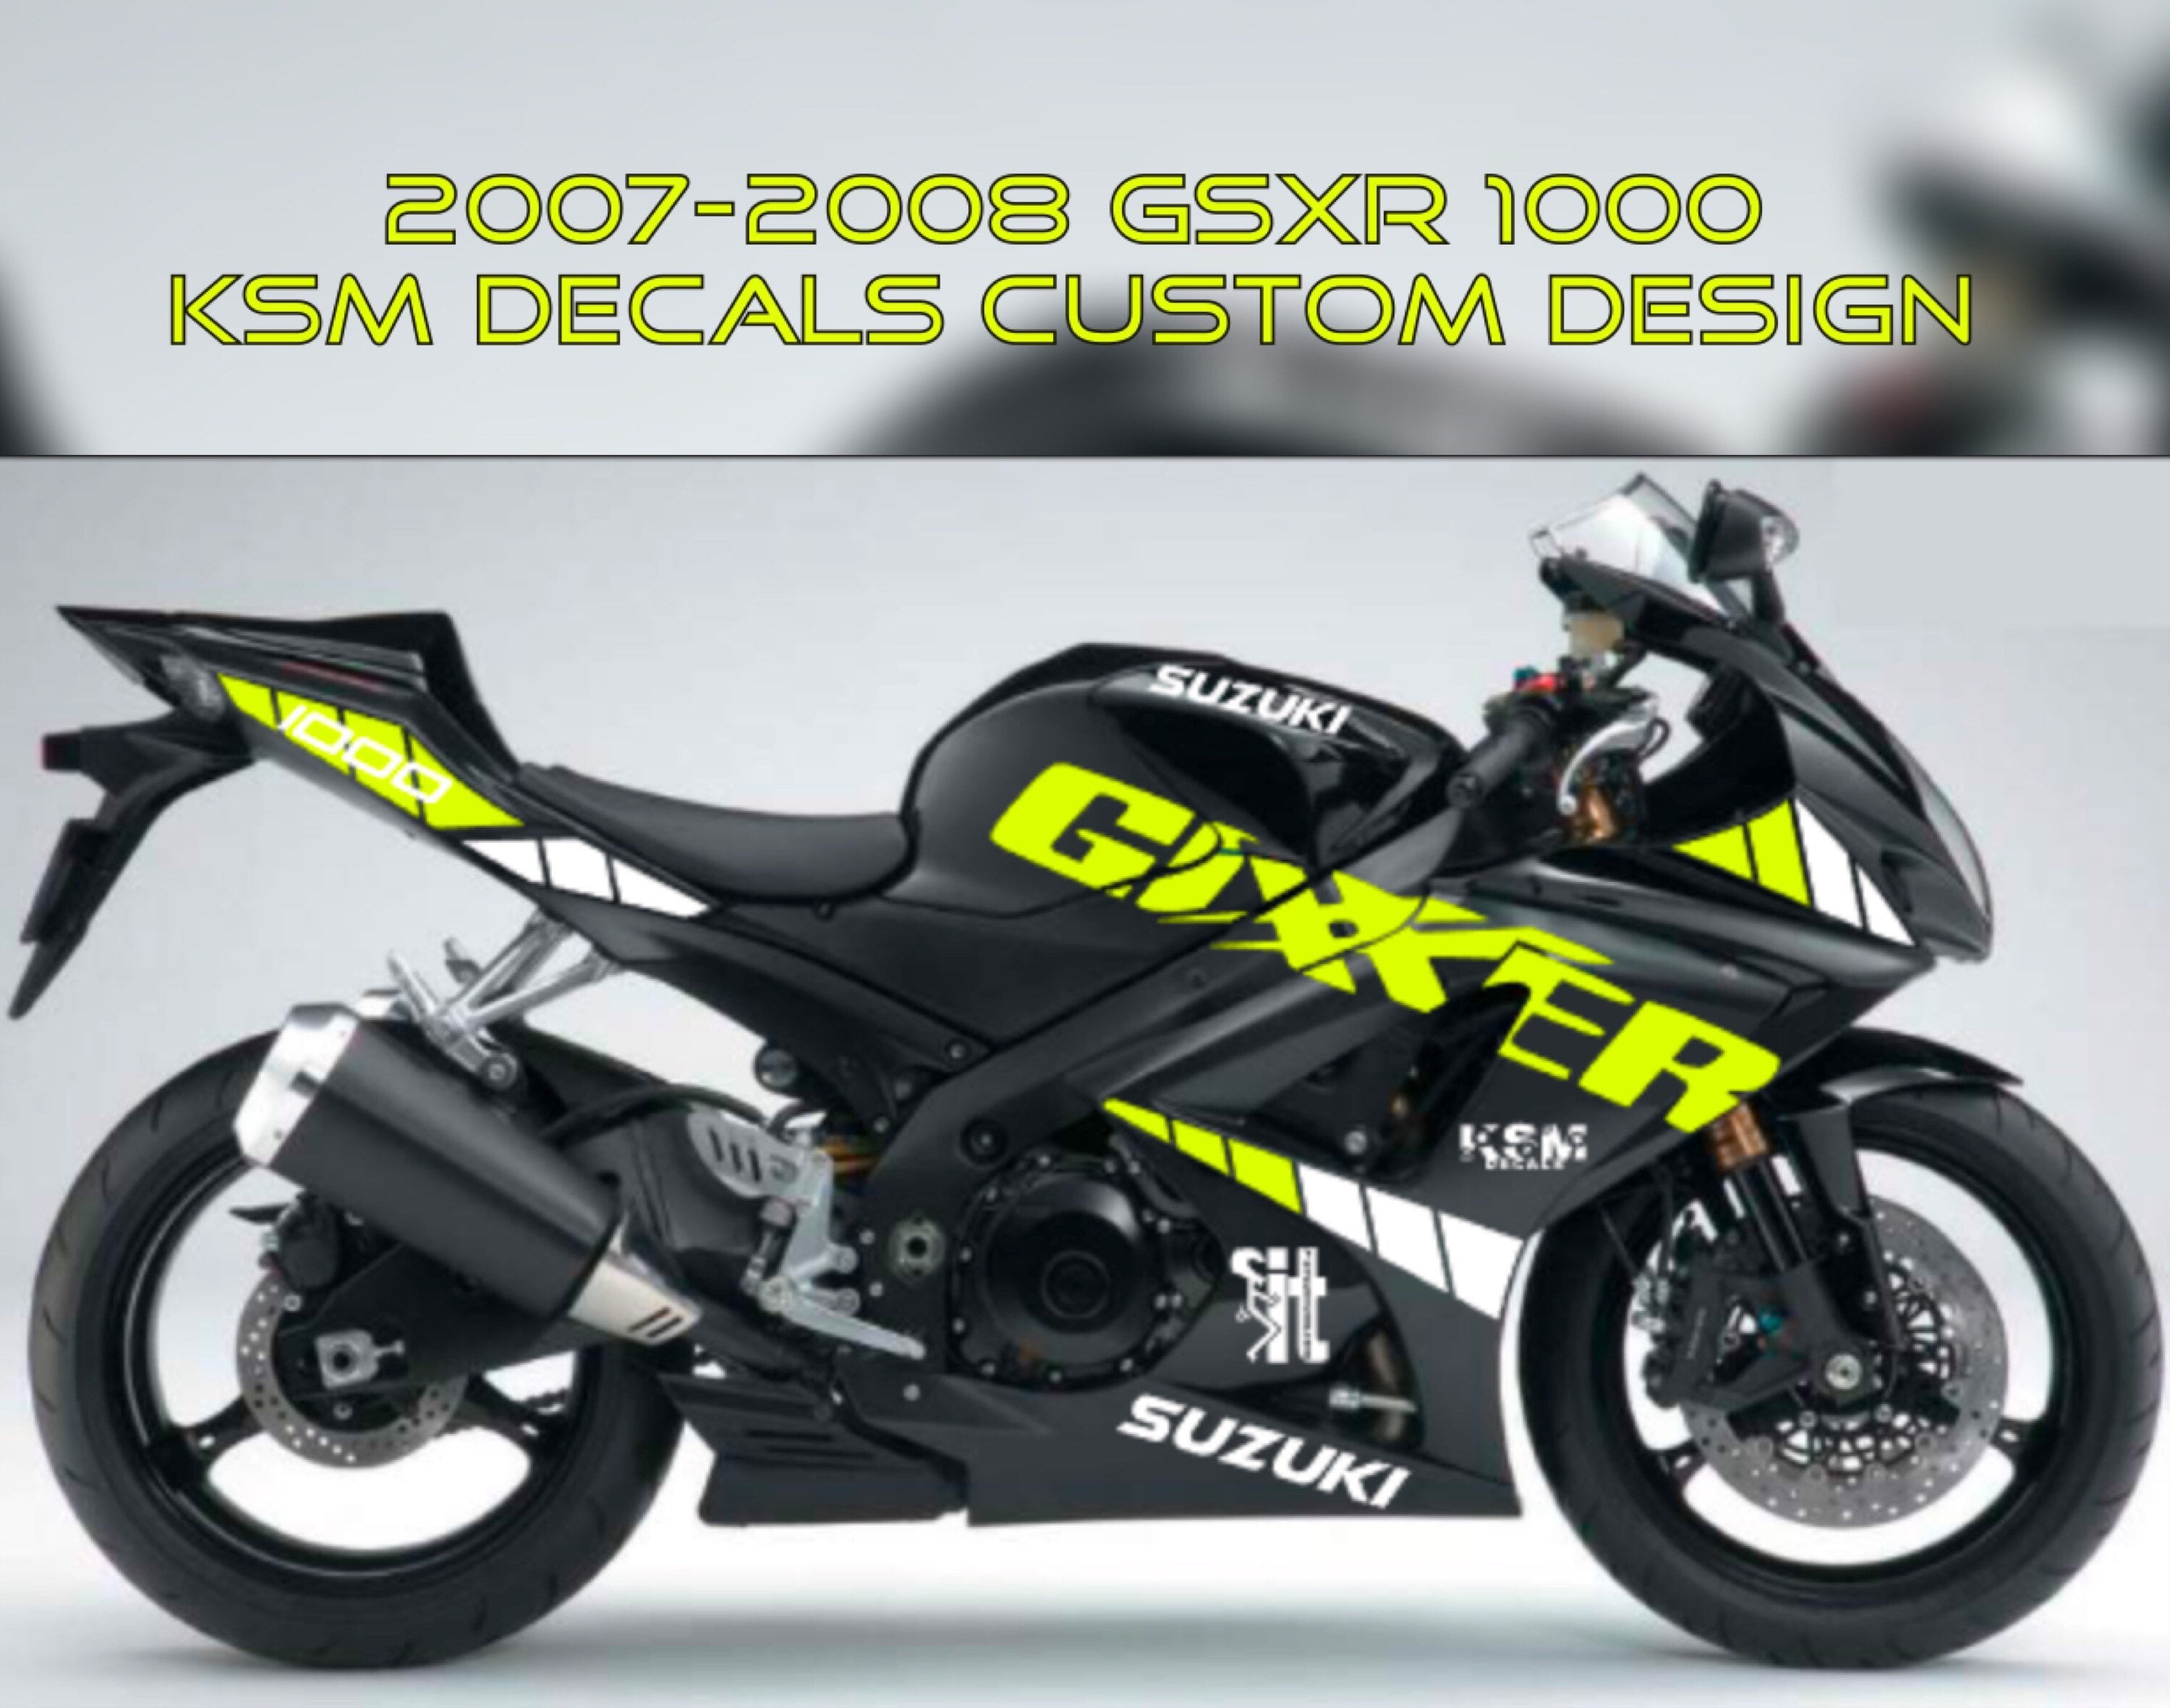 Suzuki Gsxr 1000 Decals -  Sweden